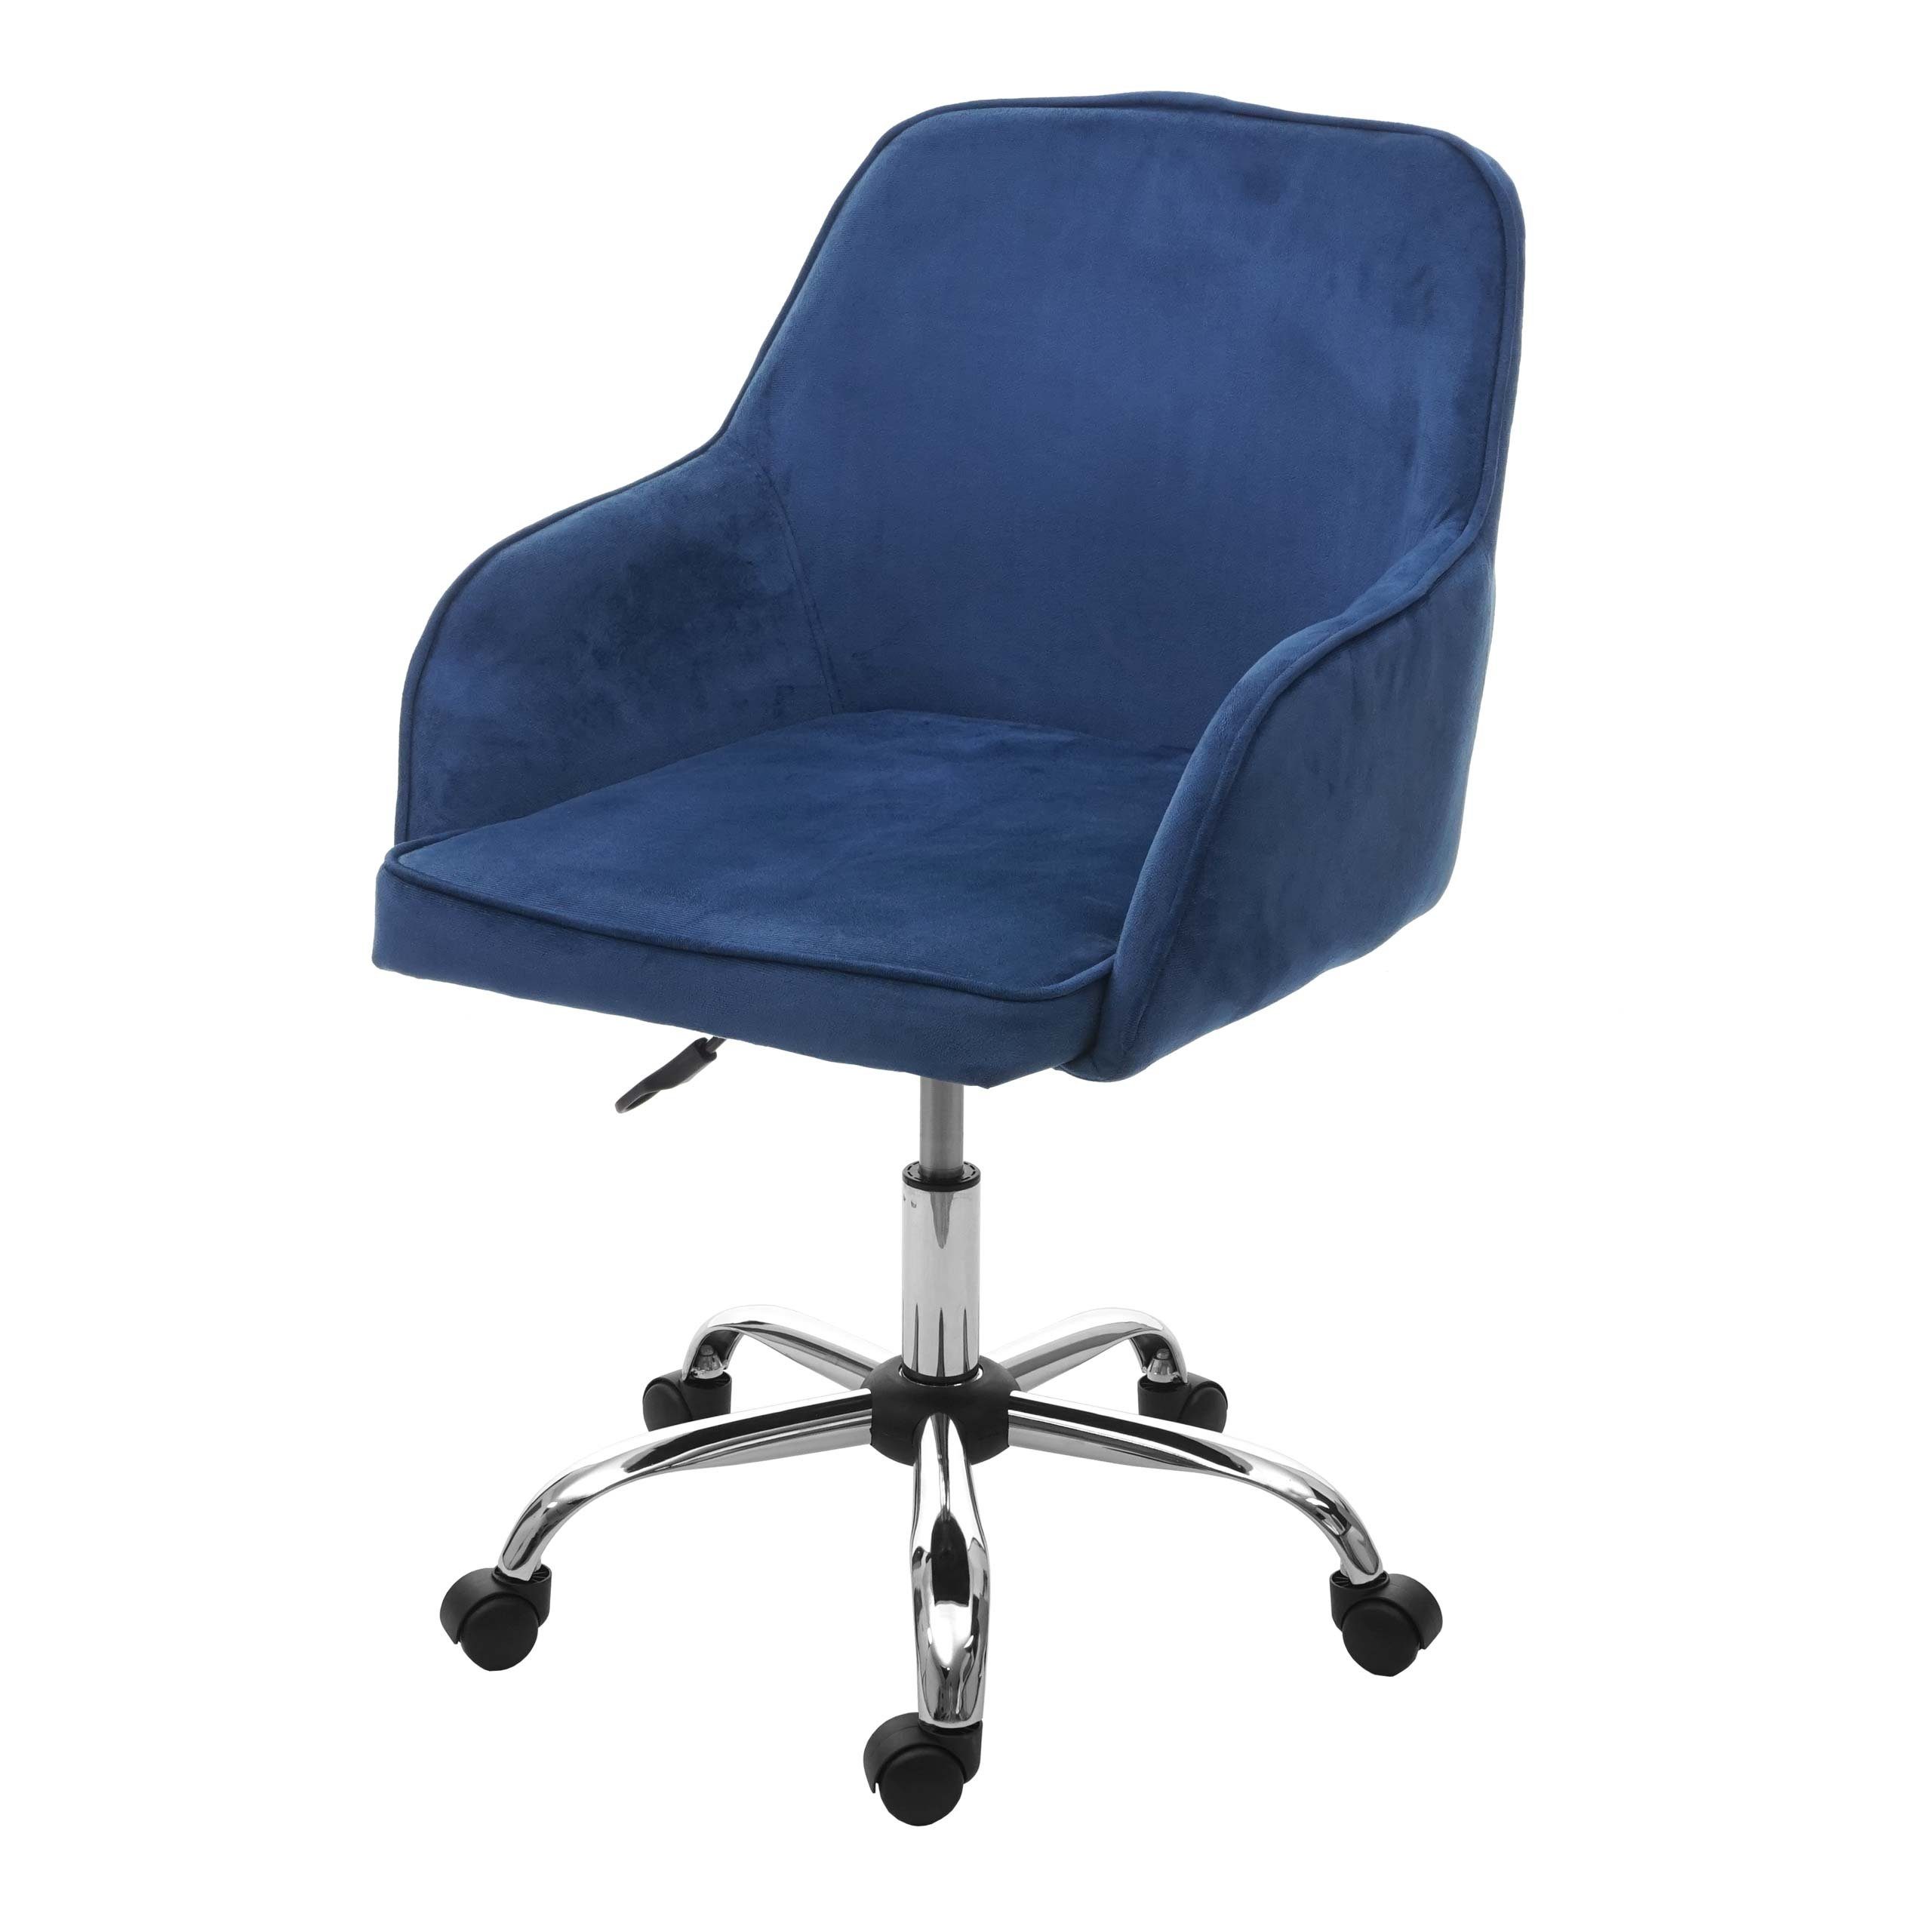 MCW Schreibtischstuhl MCW-F82, Sitzhöhe stufenlos verstellbar, 5 Universalrollen, Bequeme Polsterung blau